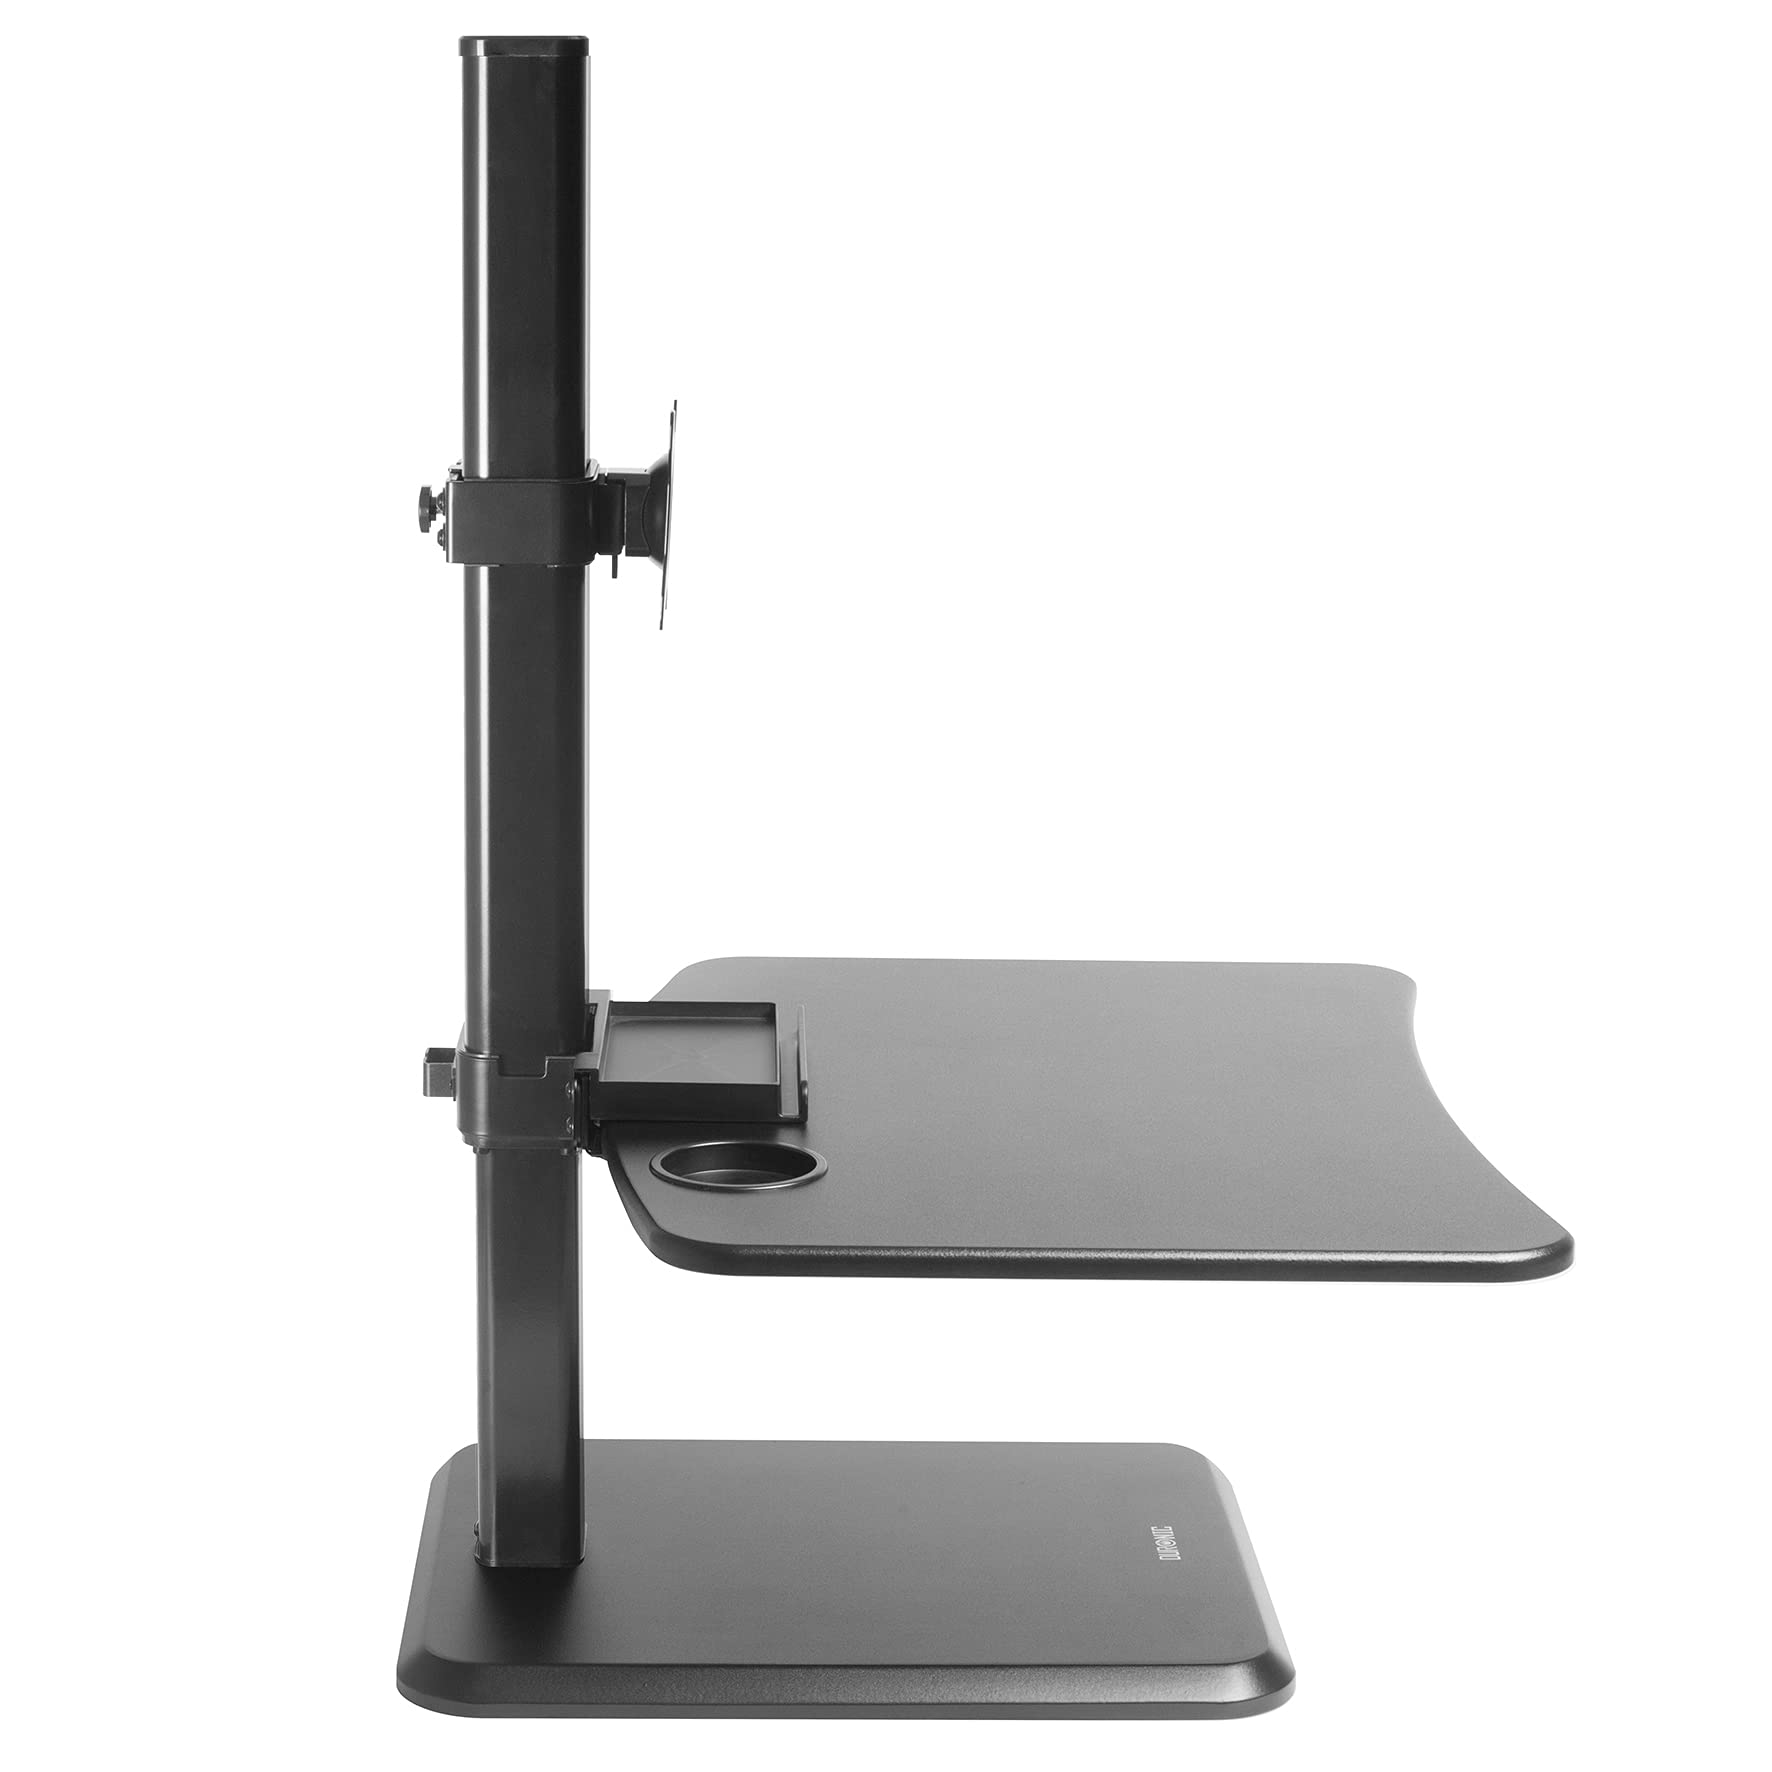 DM05D14 Höhenverstellbar | Monitorarm Tisch DURONIC bis Höhenverstellbarer Schreibtisch | Workstation 116 cm 72 | Sitz-Steh